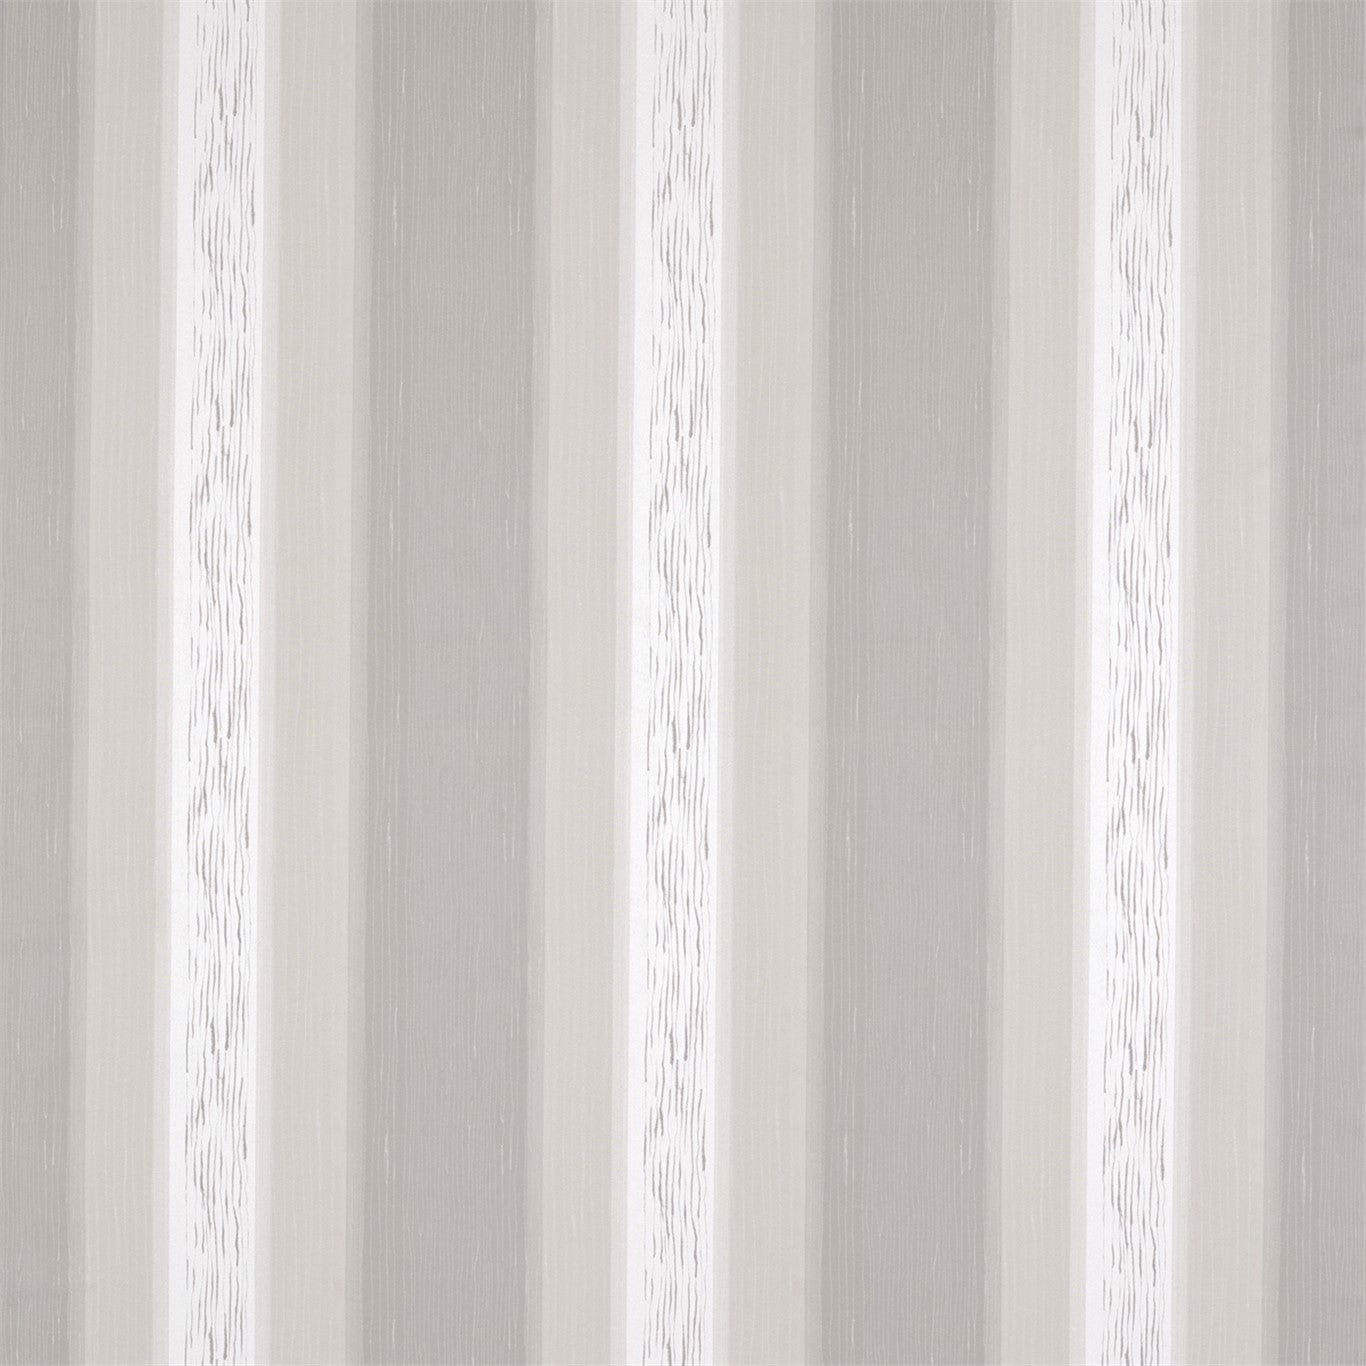 Mizumi Fabric by Harlequin